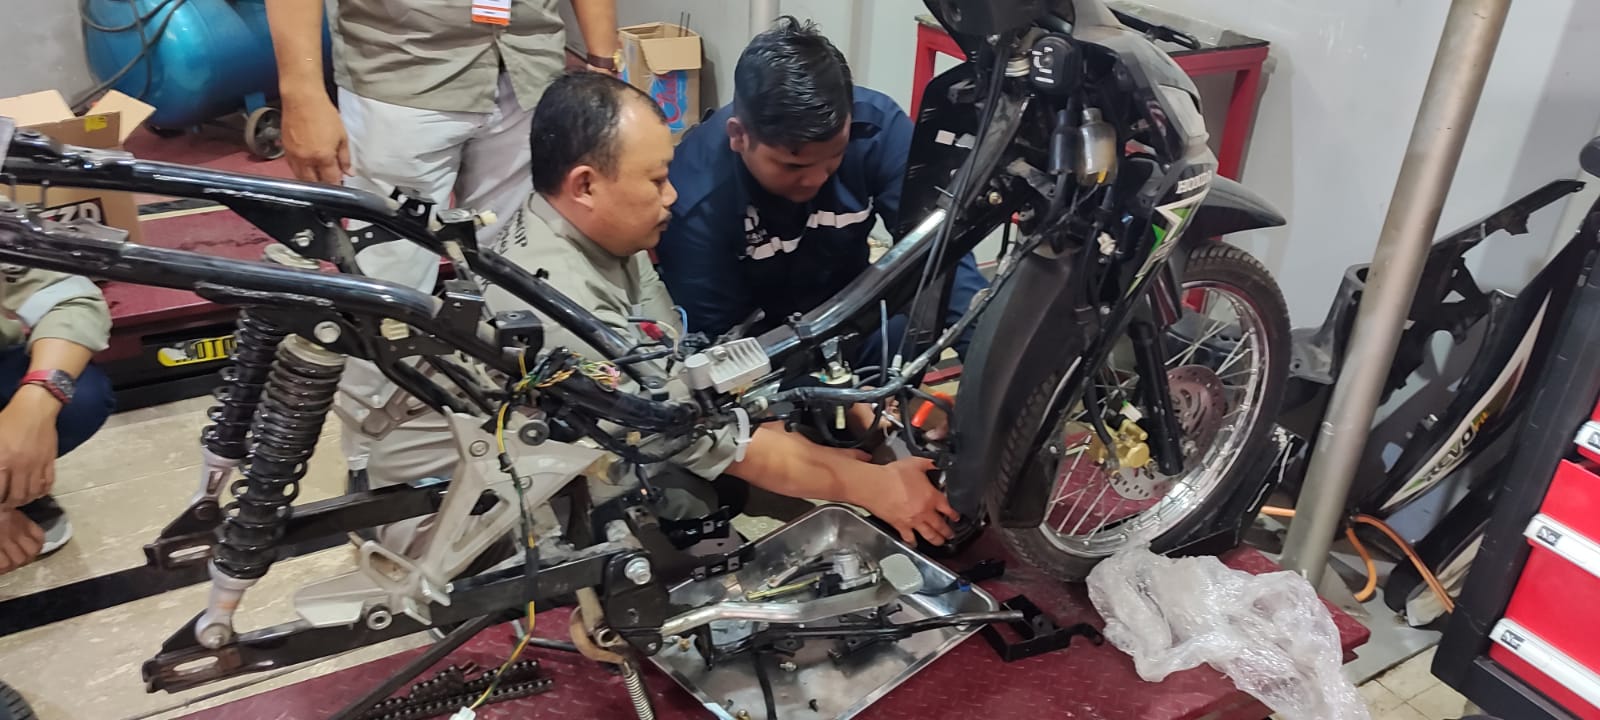 Kementerian ESDM Gelar Workshop Konversi Sepeda Motor BBM Menjadi Sepeda Motor Listrik di Kota Malang  – Jawa Timur